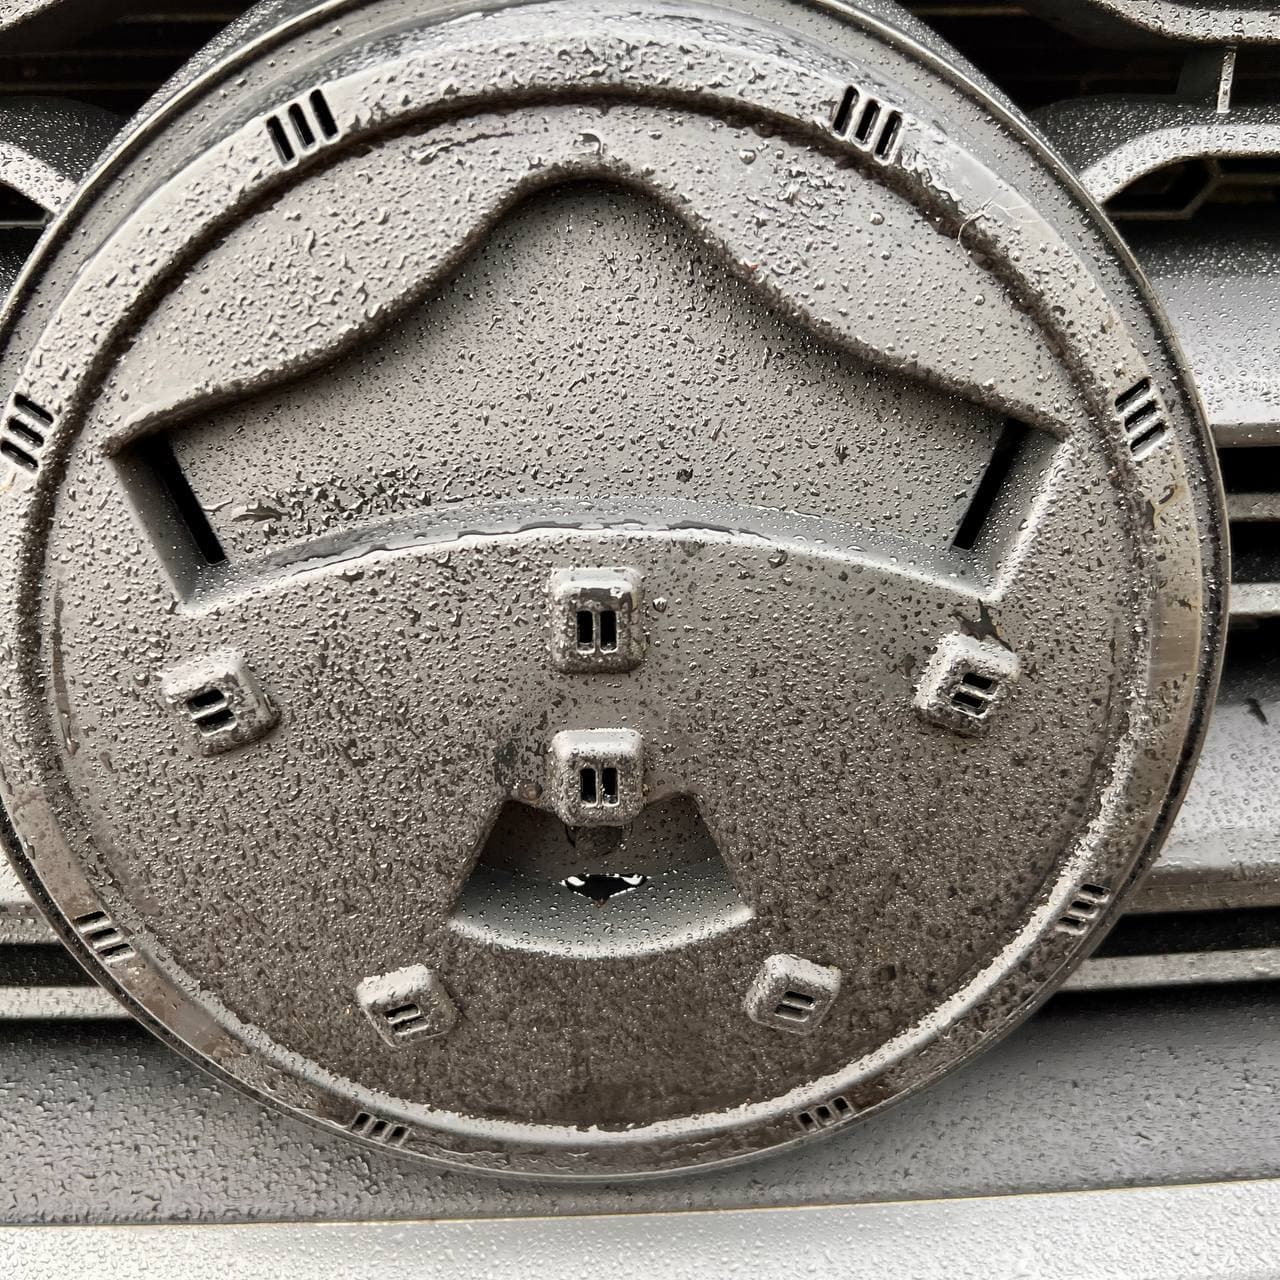 VW T6 R-Line Front Grille (2 en 1) con emblema / sin emblema - Negro brillante